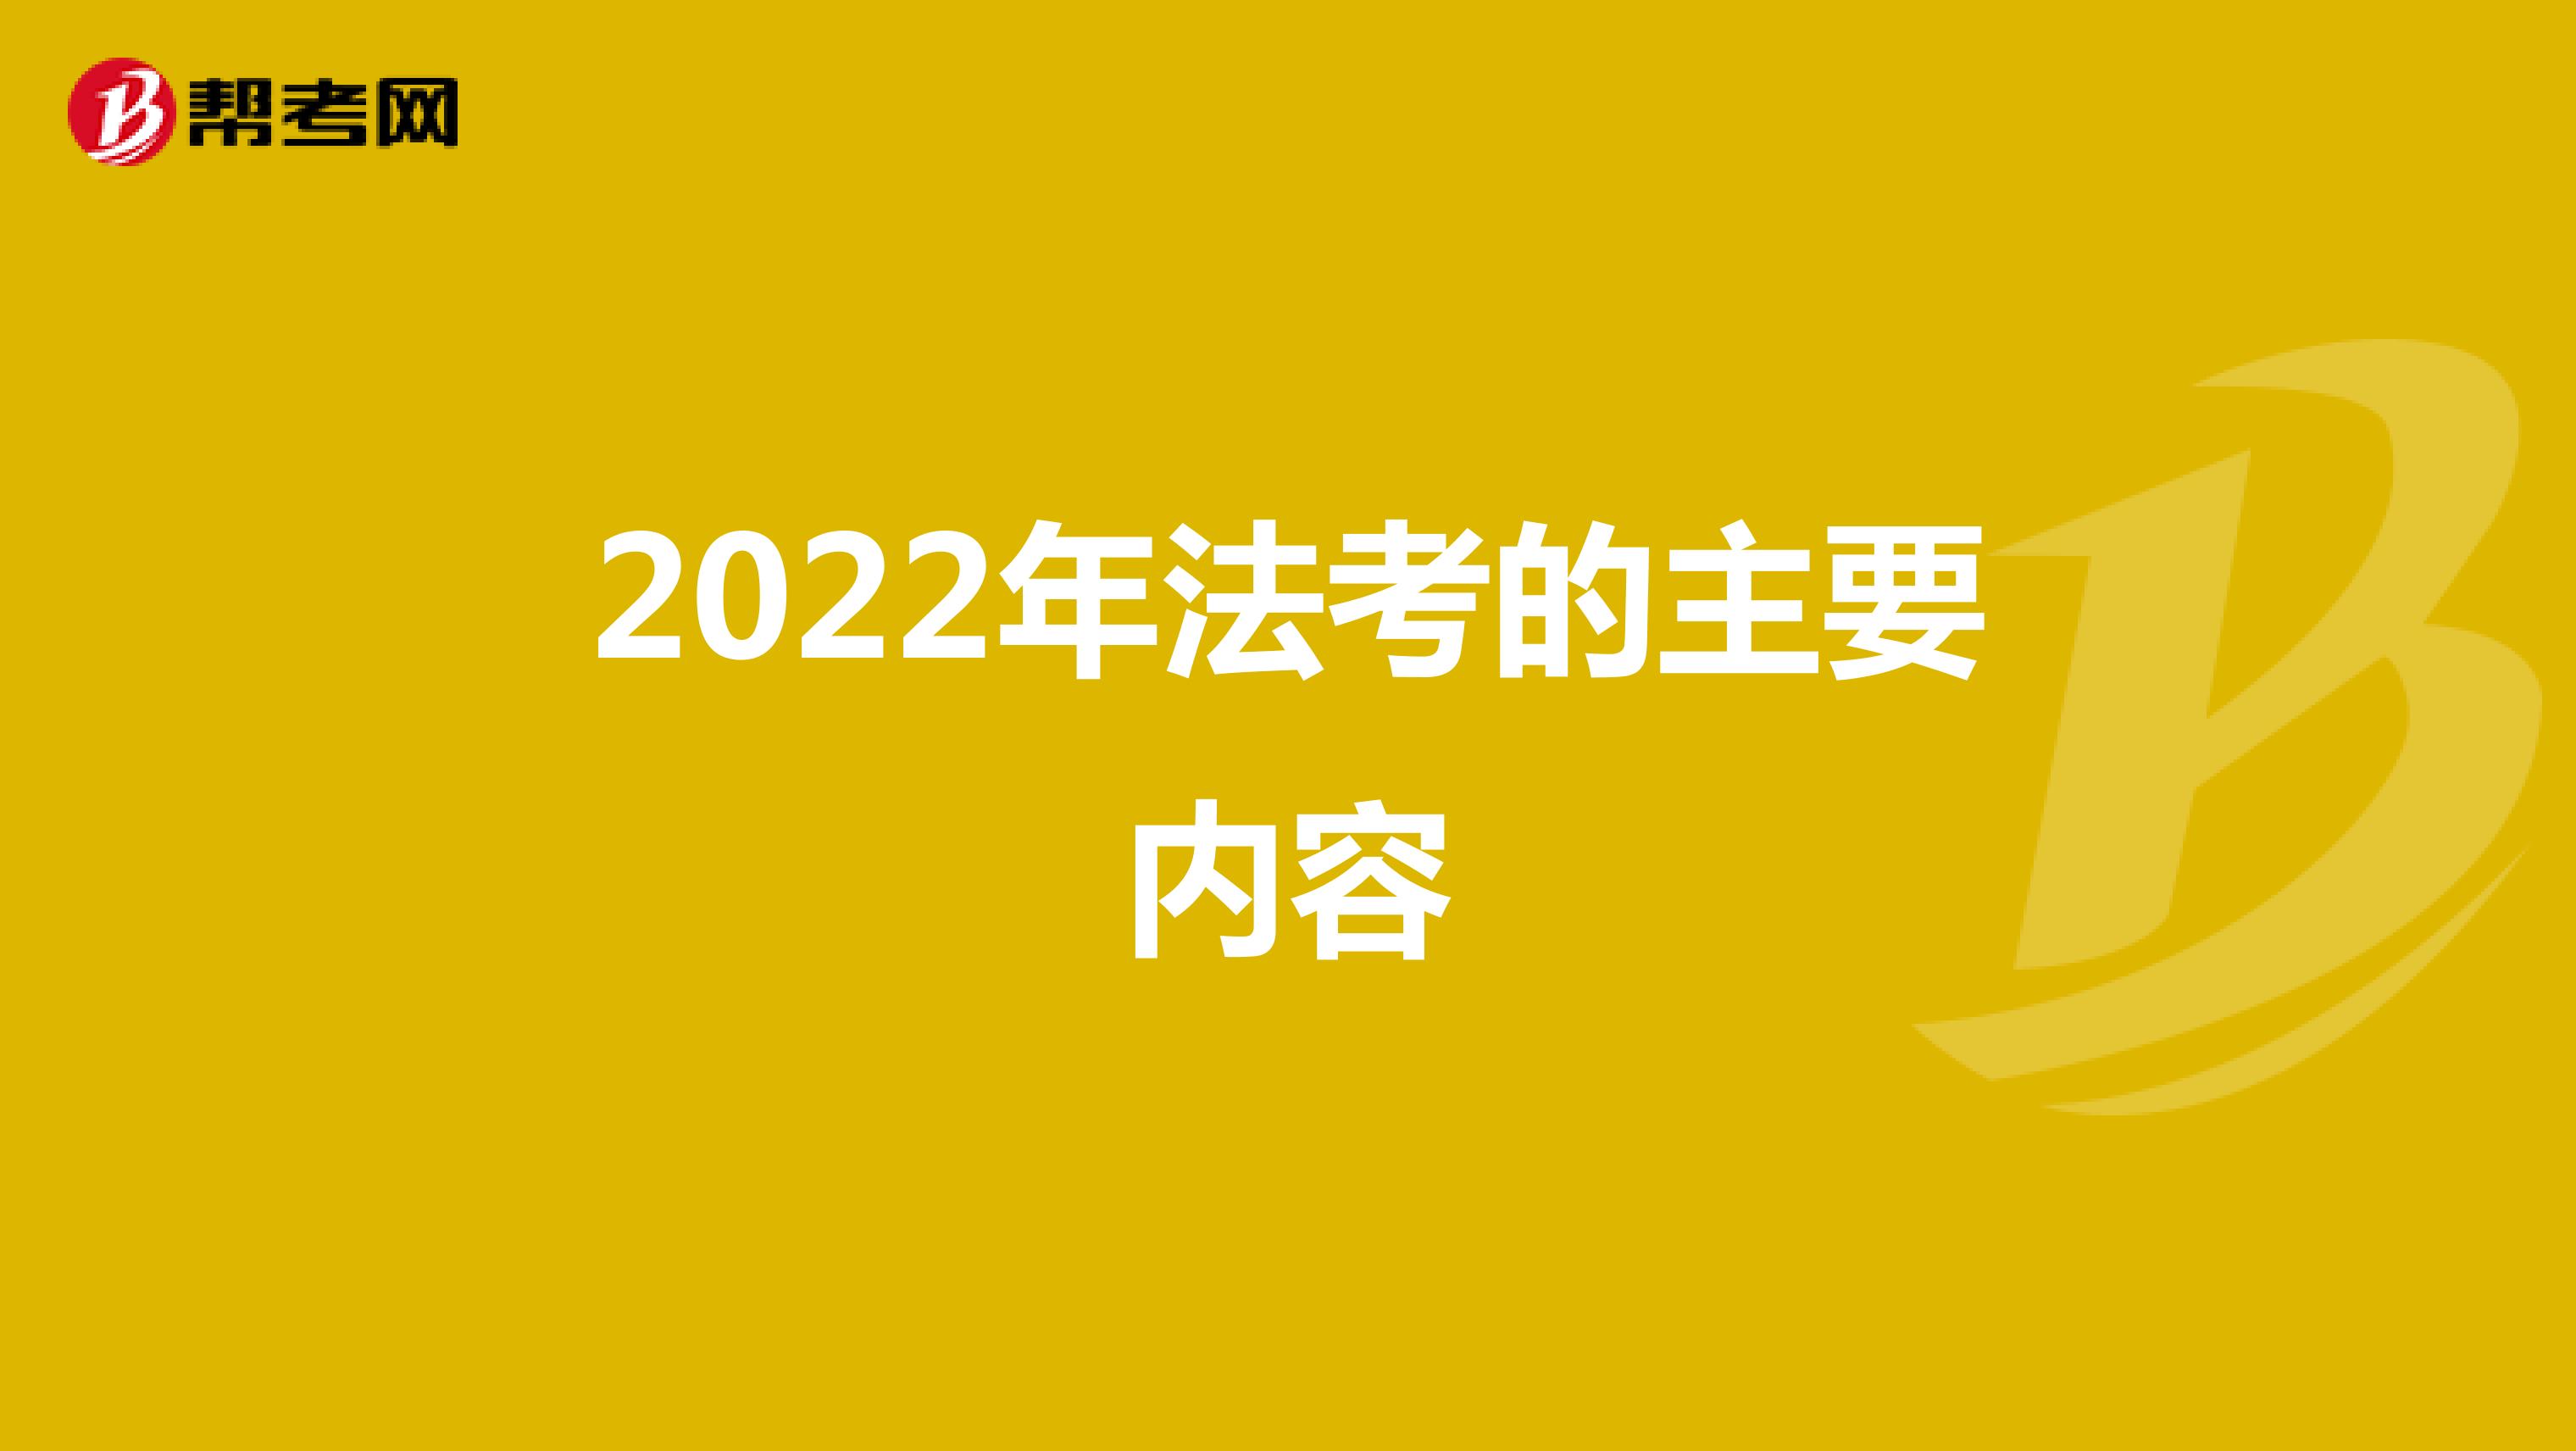 2022年法考的主要内容